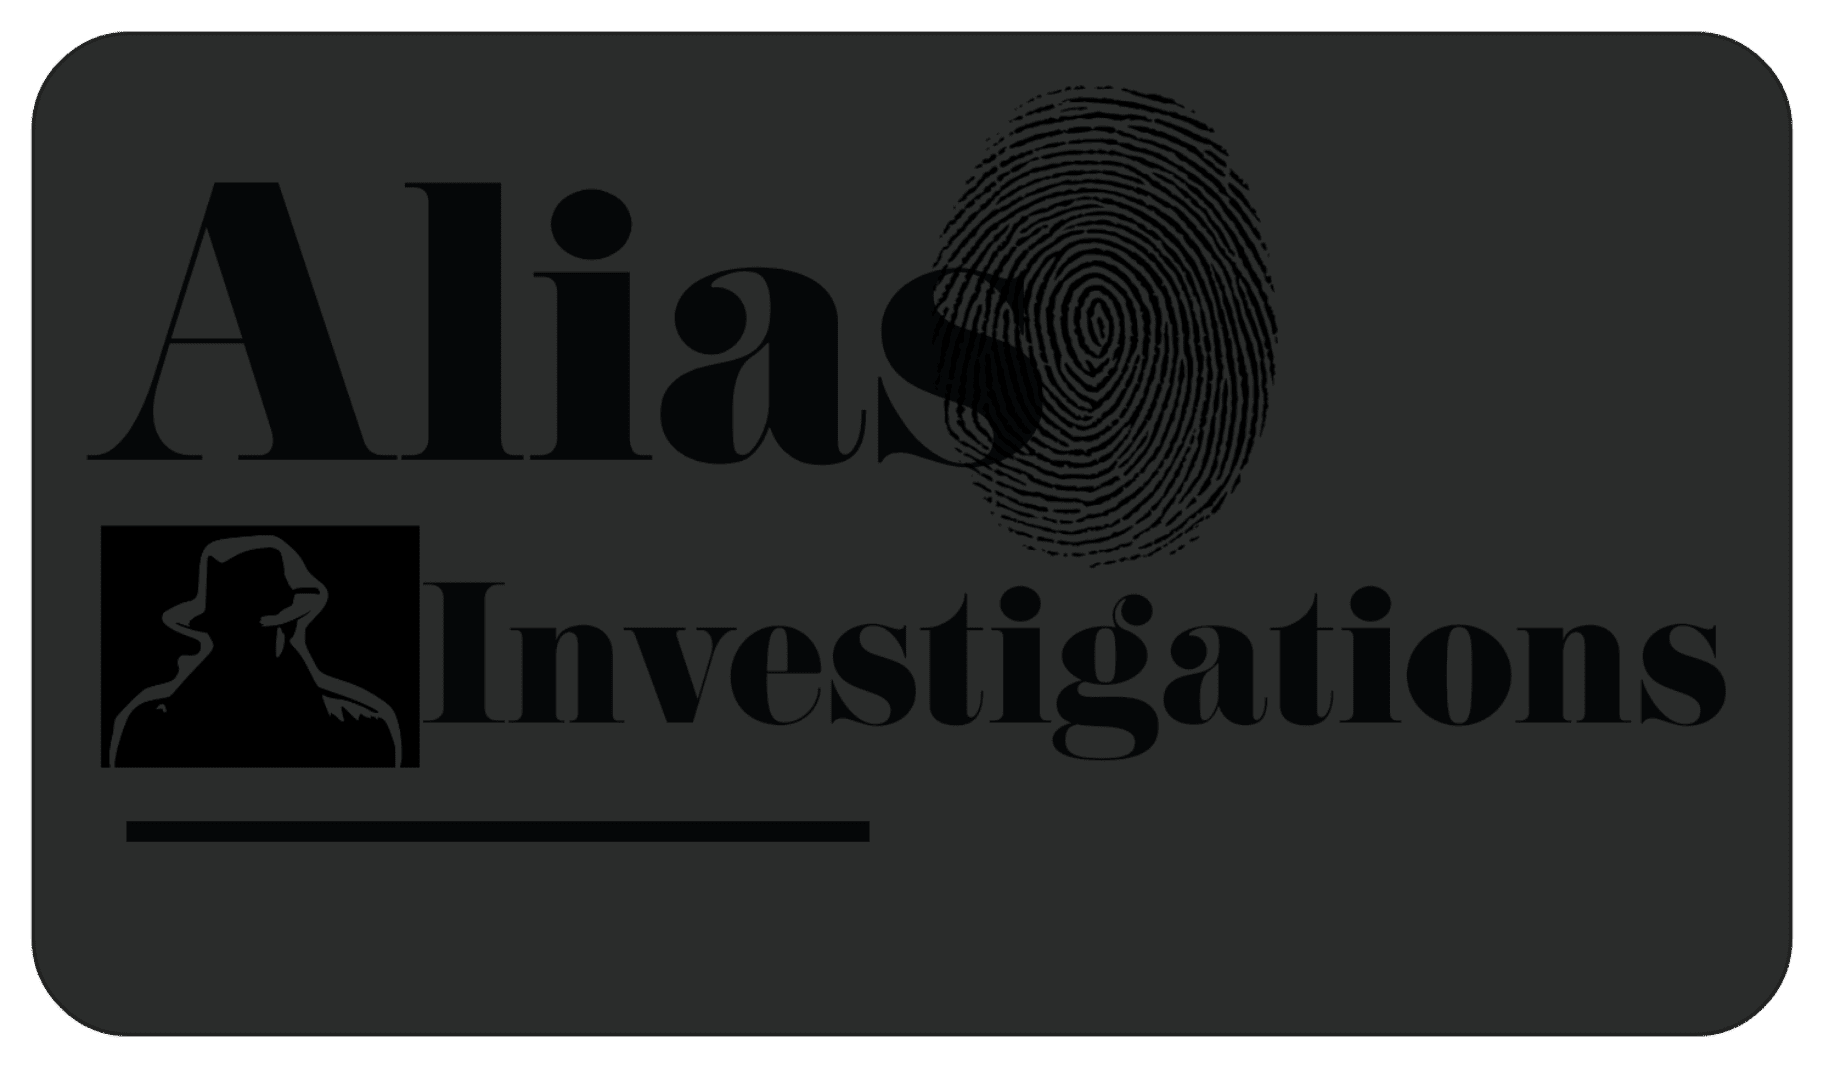 Alias Investigations